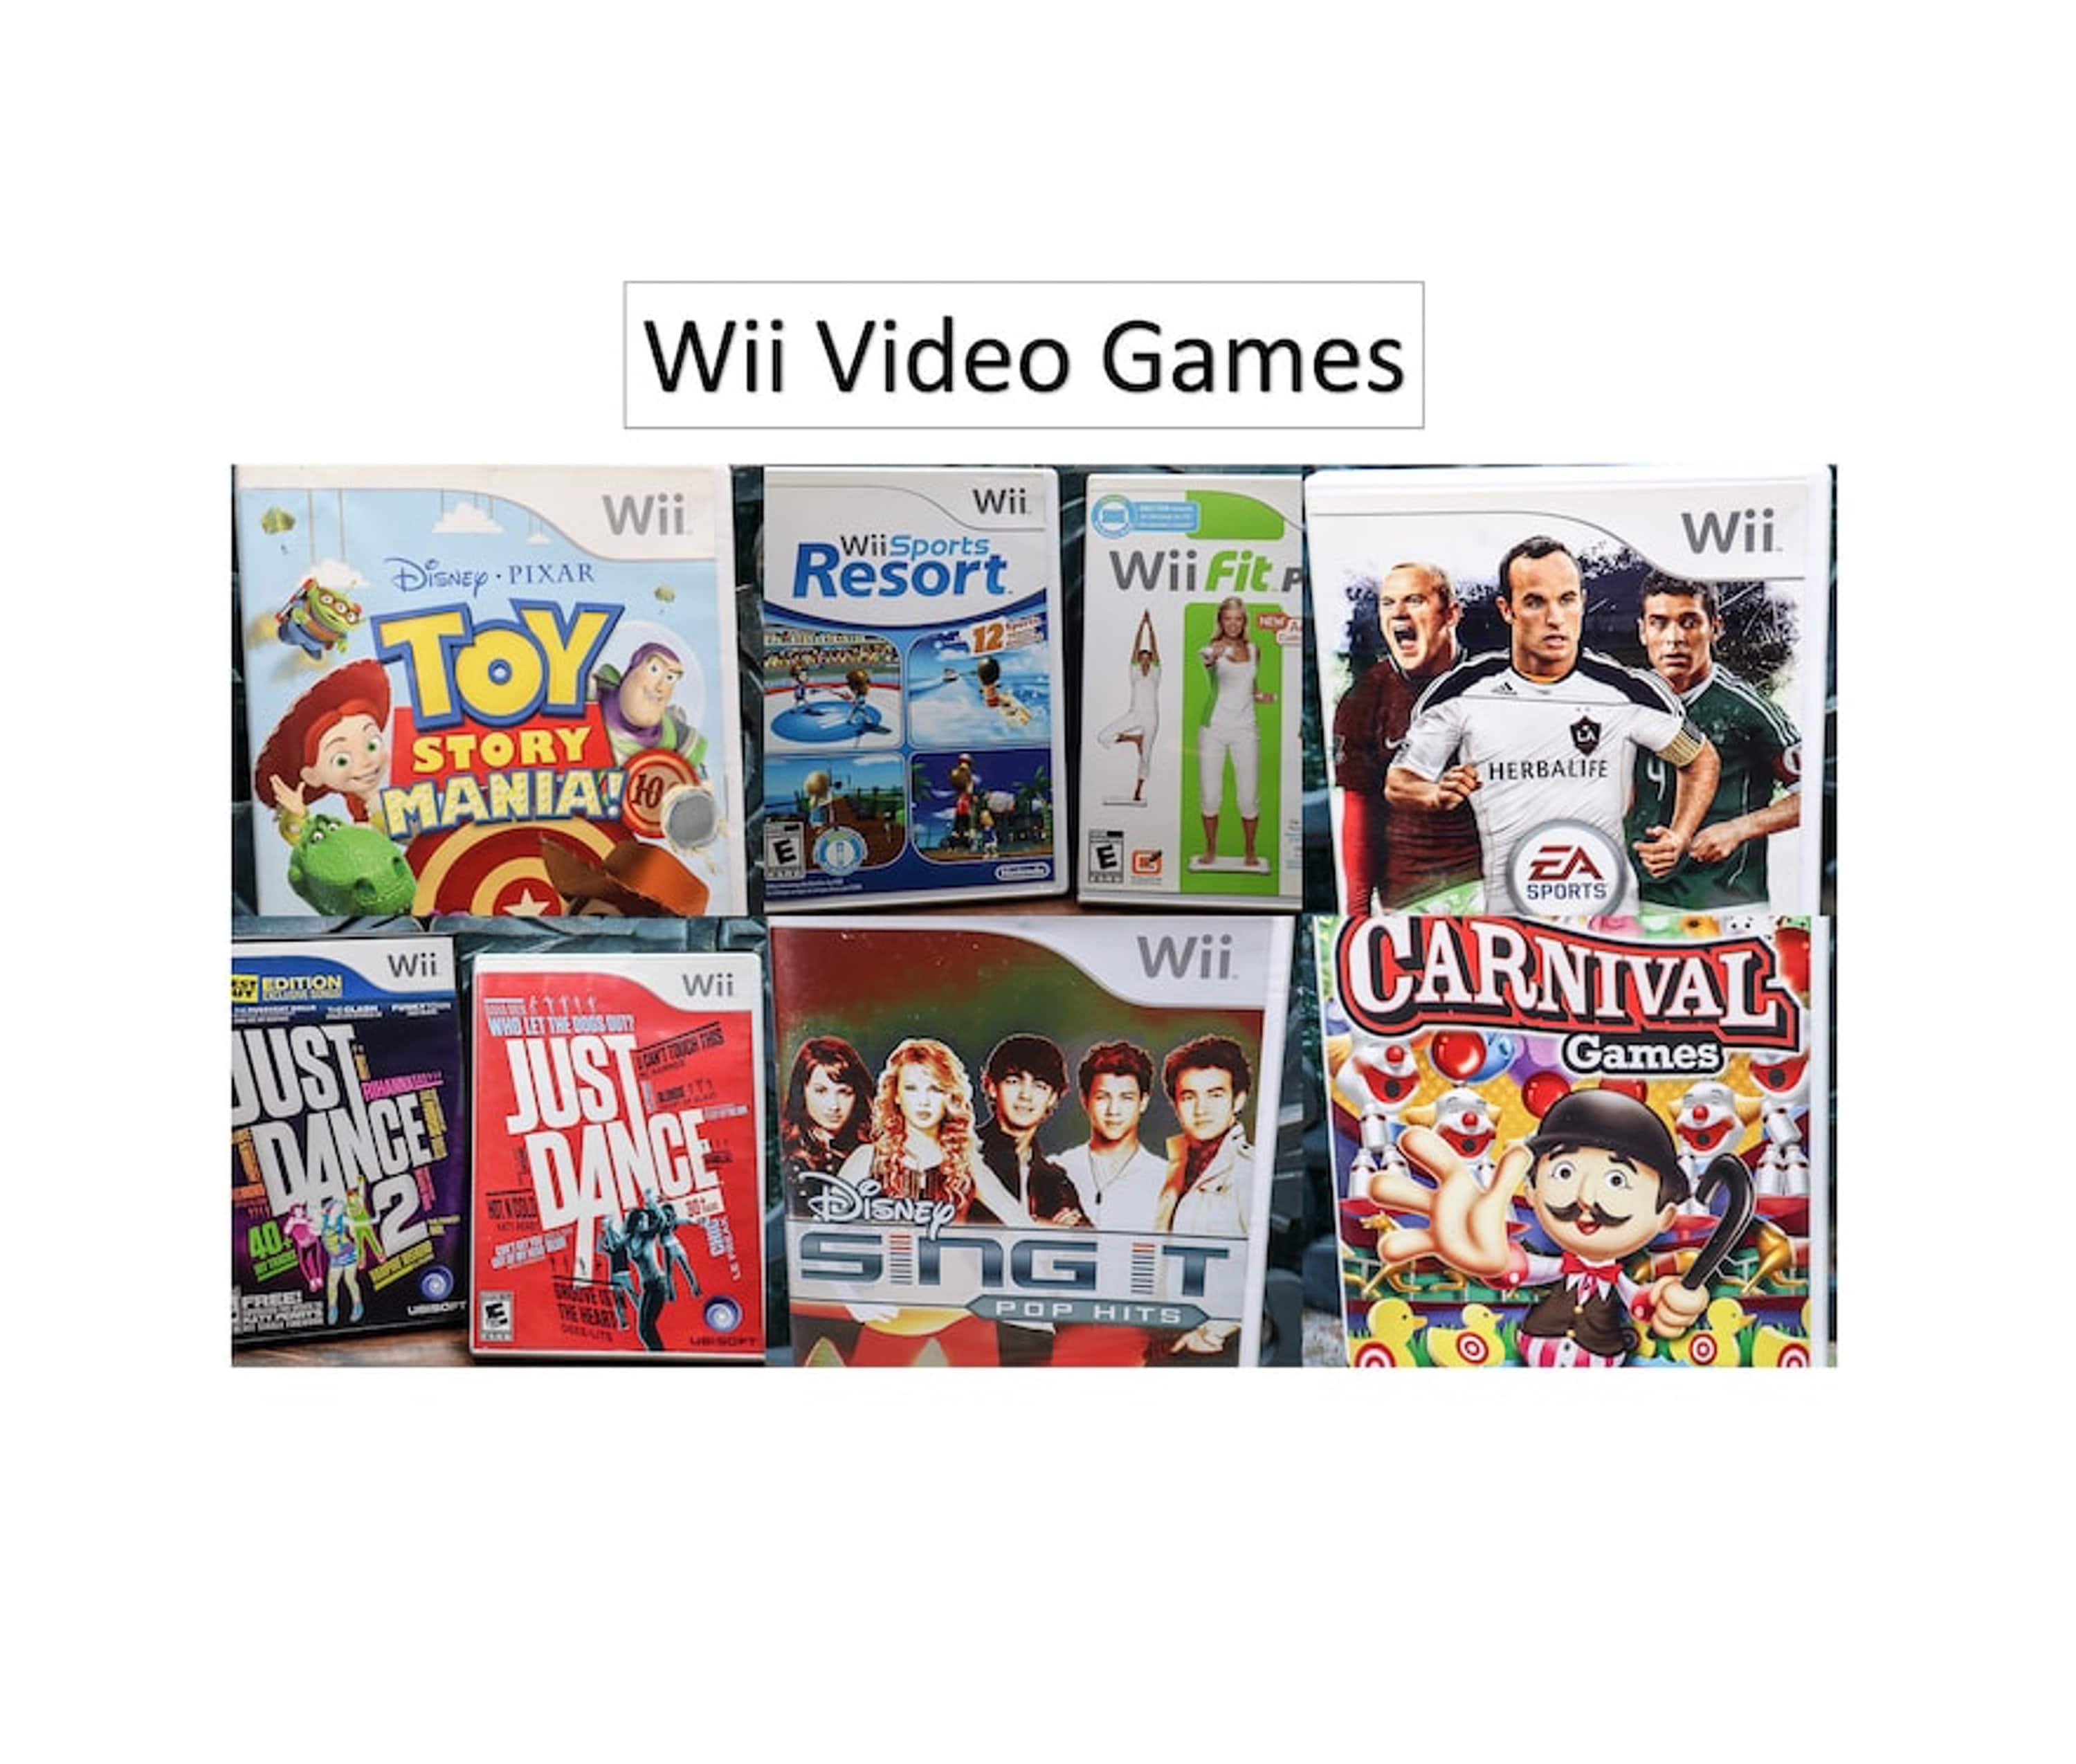 Jogo Usado Nintendo Land Wii U - Game Mania